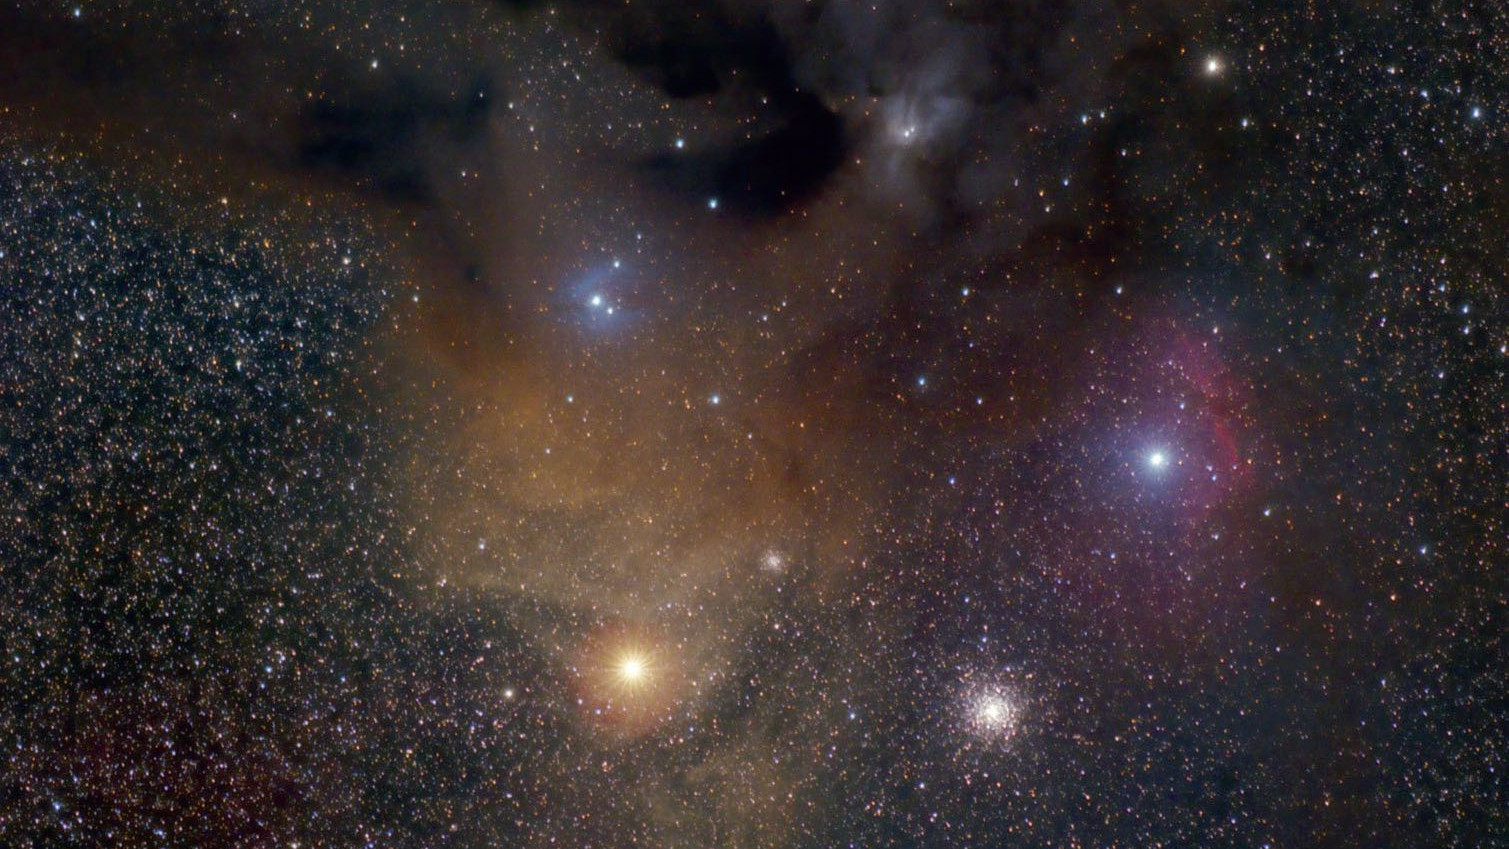 Der farbenfrohe Rho-Ophiuchi-Nebel und seine Umgebung: Antares ist der helle, orange Stern unterhalb des Nebels, rechts davon der Kugelsternhaufen M 4. Jim Thommes